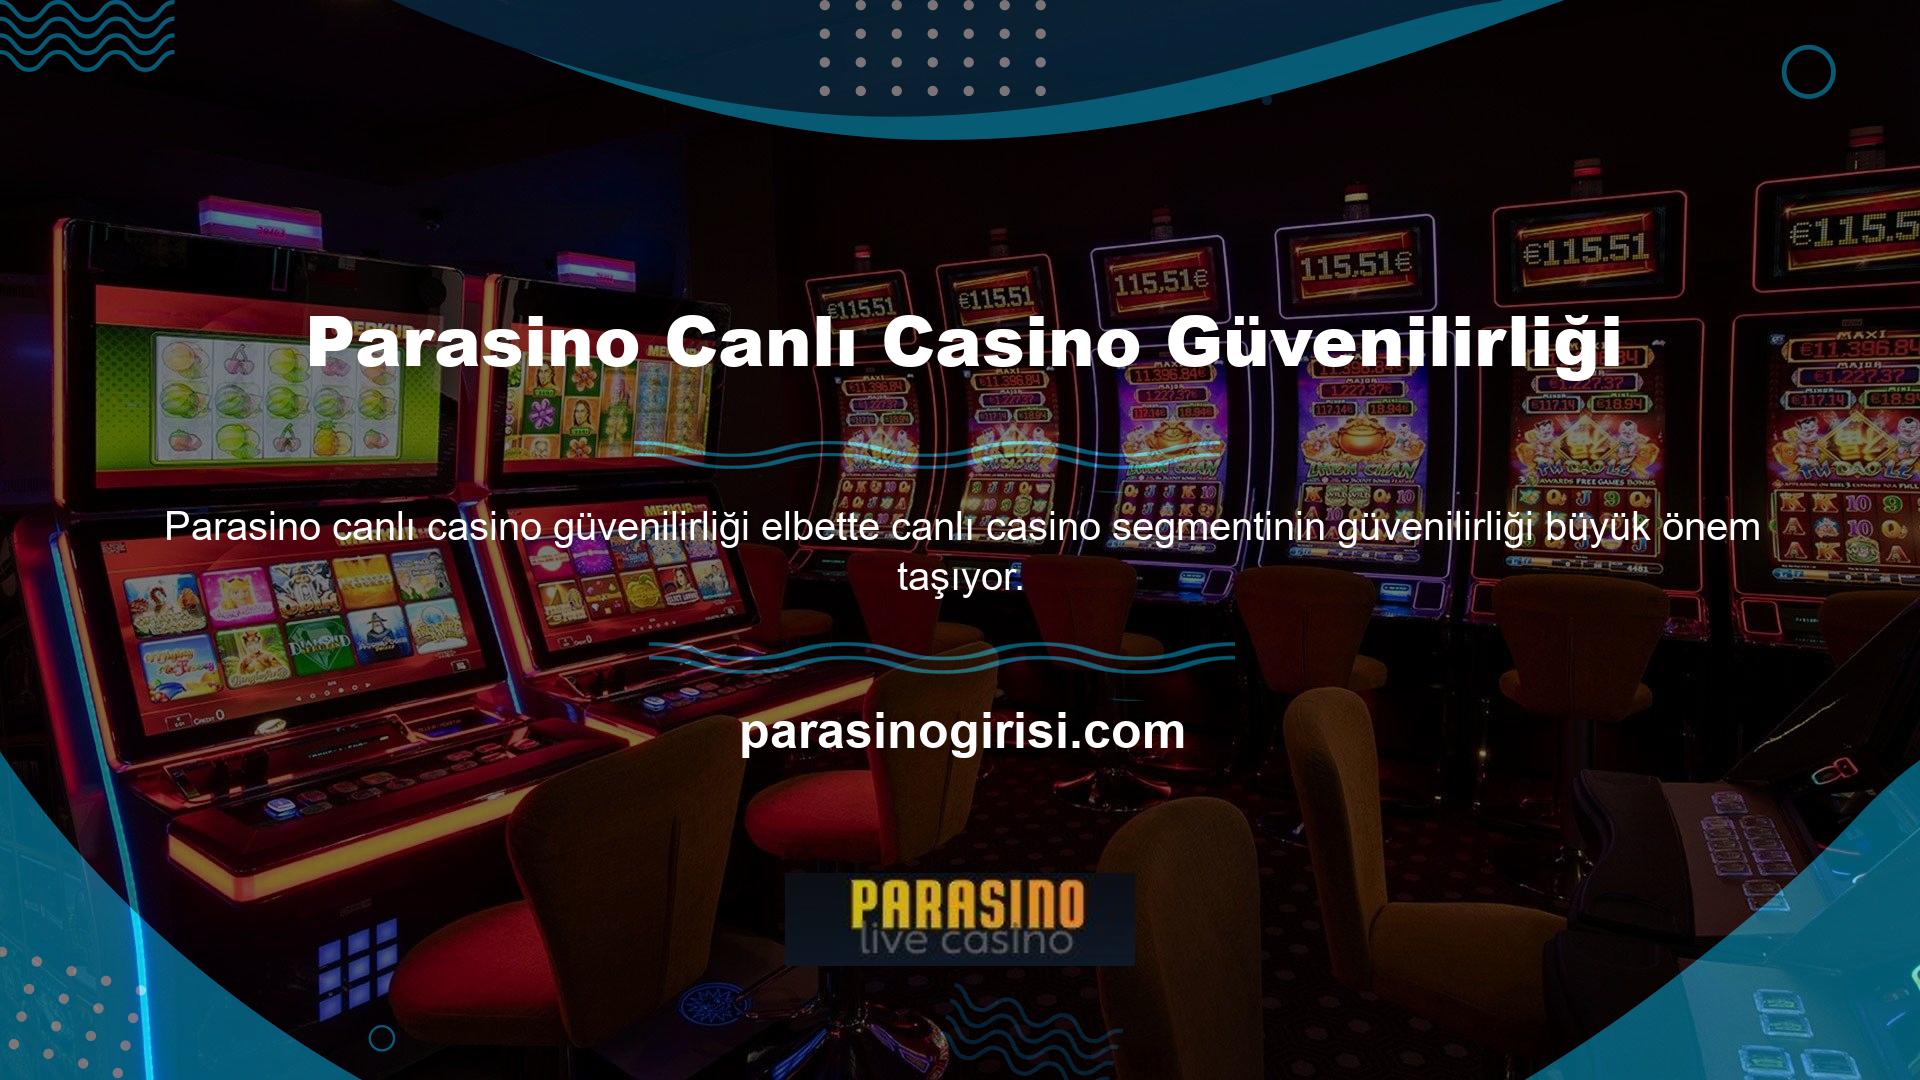 Canlı casinoların güvenilirliği gerçekten klasiktir